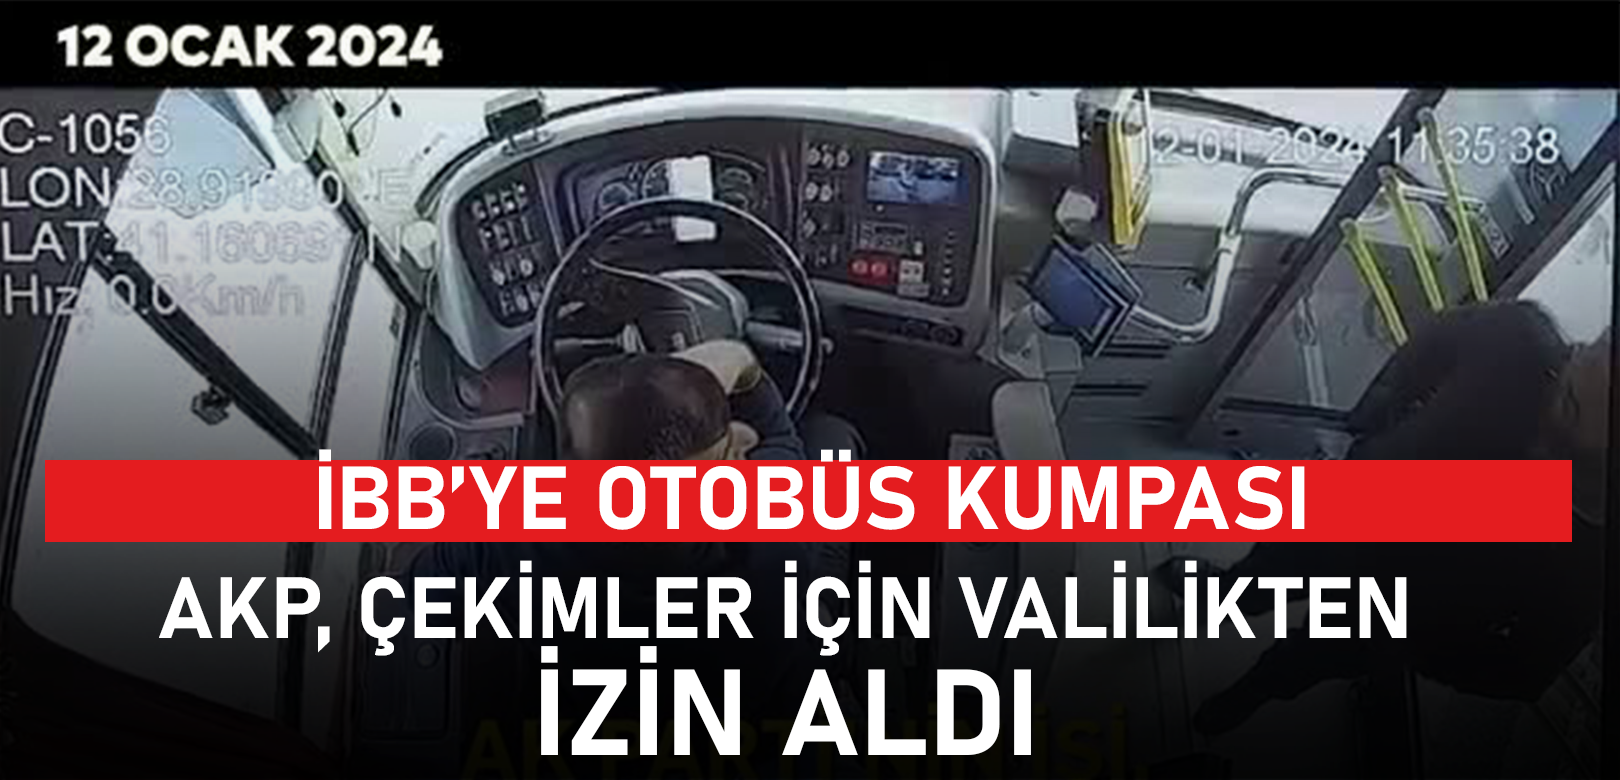 AKP, 'otobüs kumpası' için Valilikten izin almış